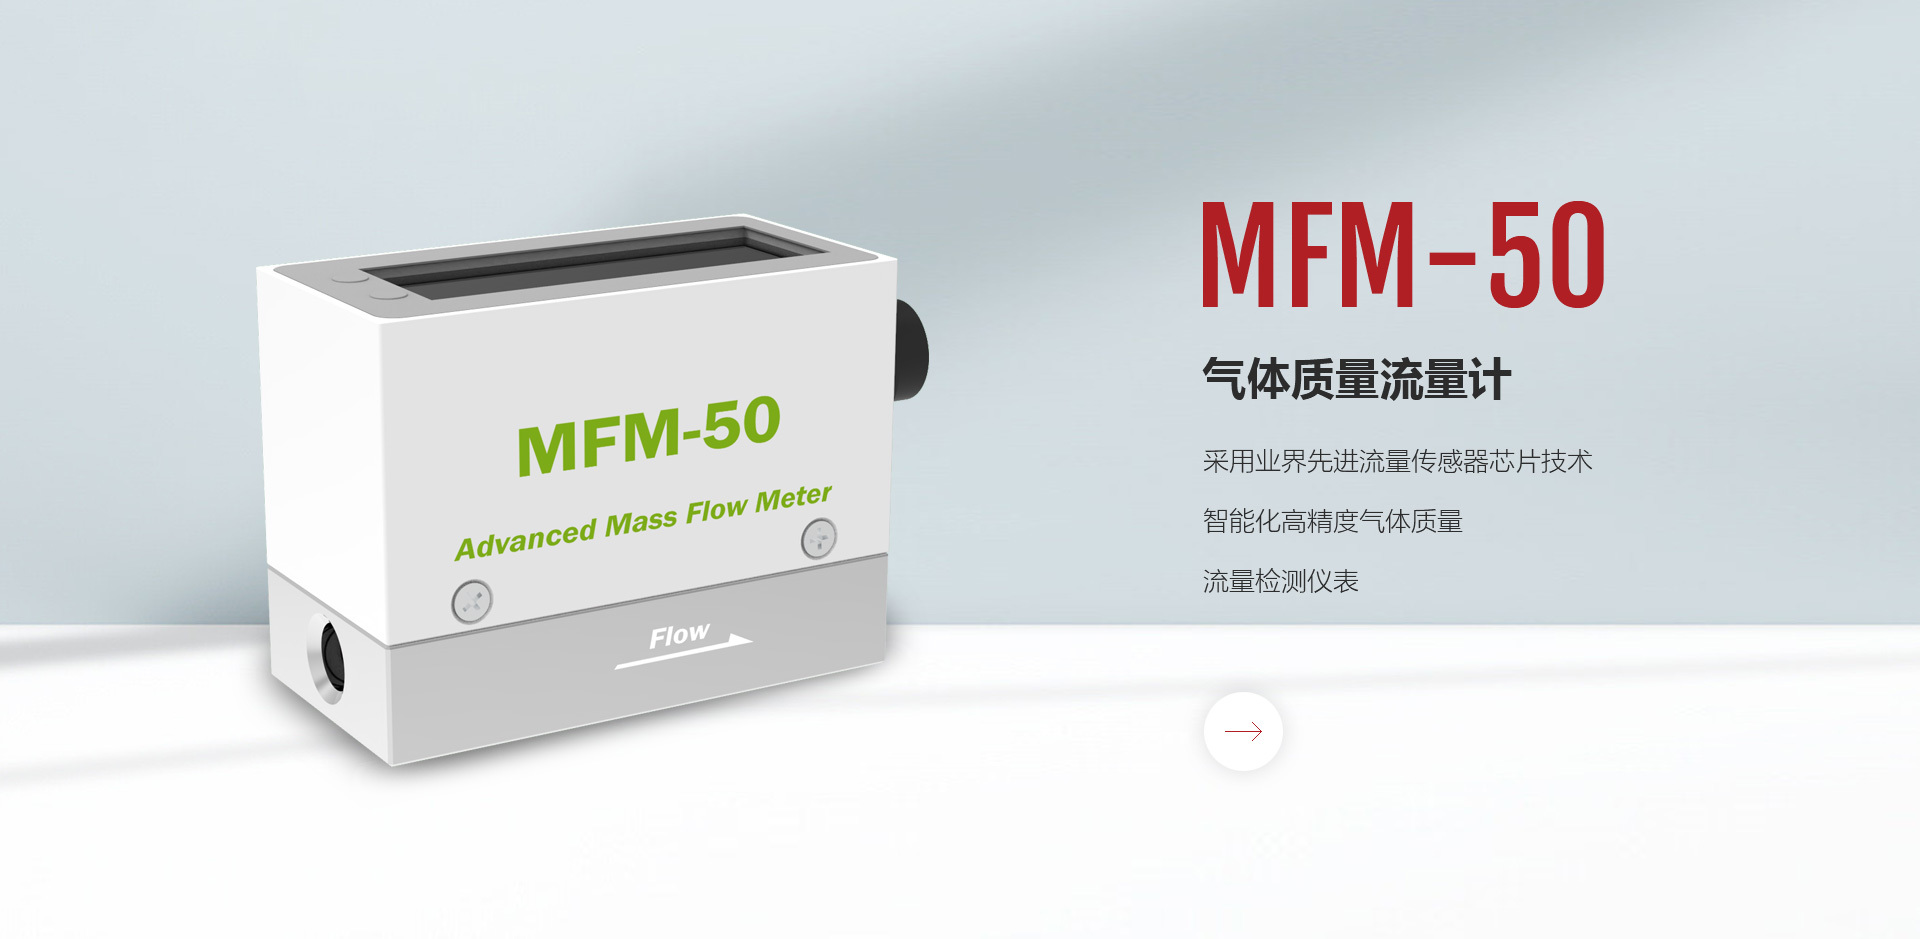 MFM-50气体质量流量计，气体质量流量计一般指热式气体质量流量计。热式气体质量流量计是利用热扩散原理测量气体流量的仪表。